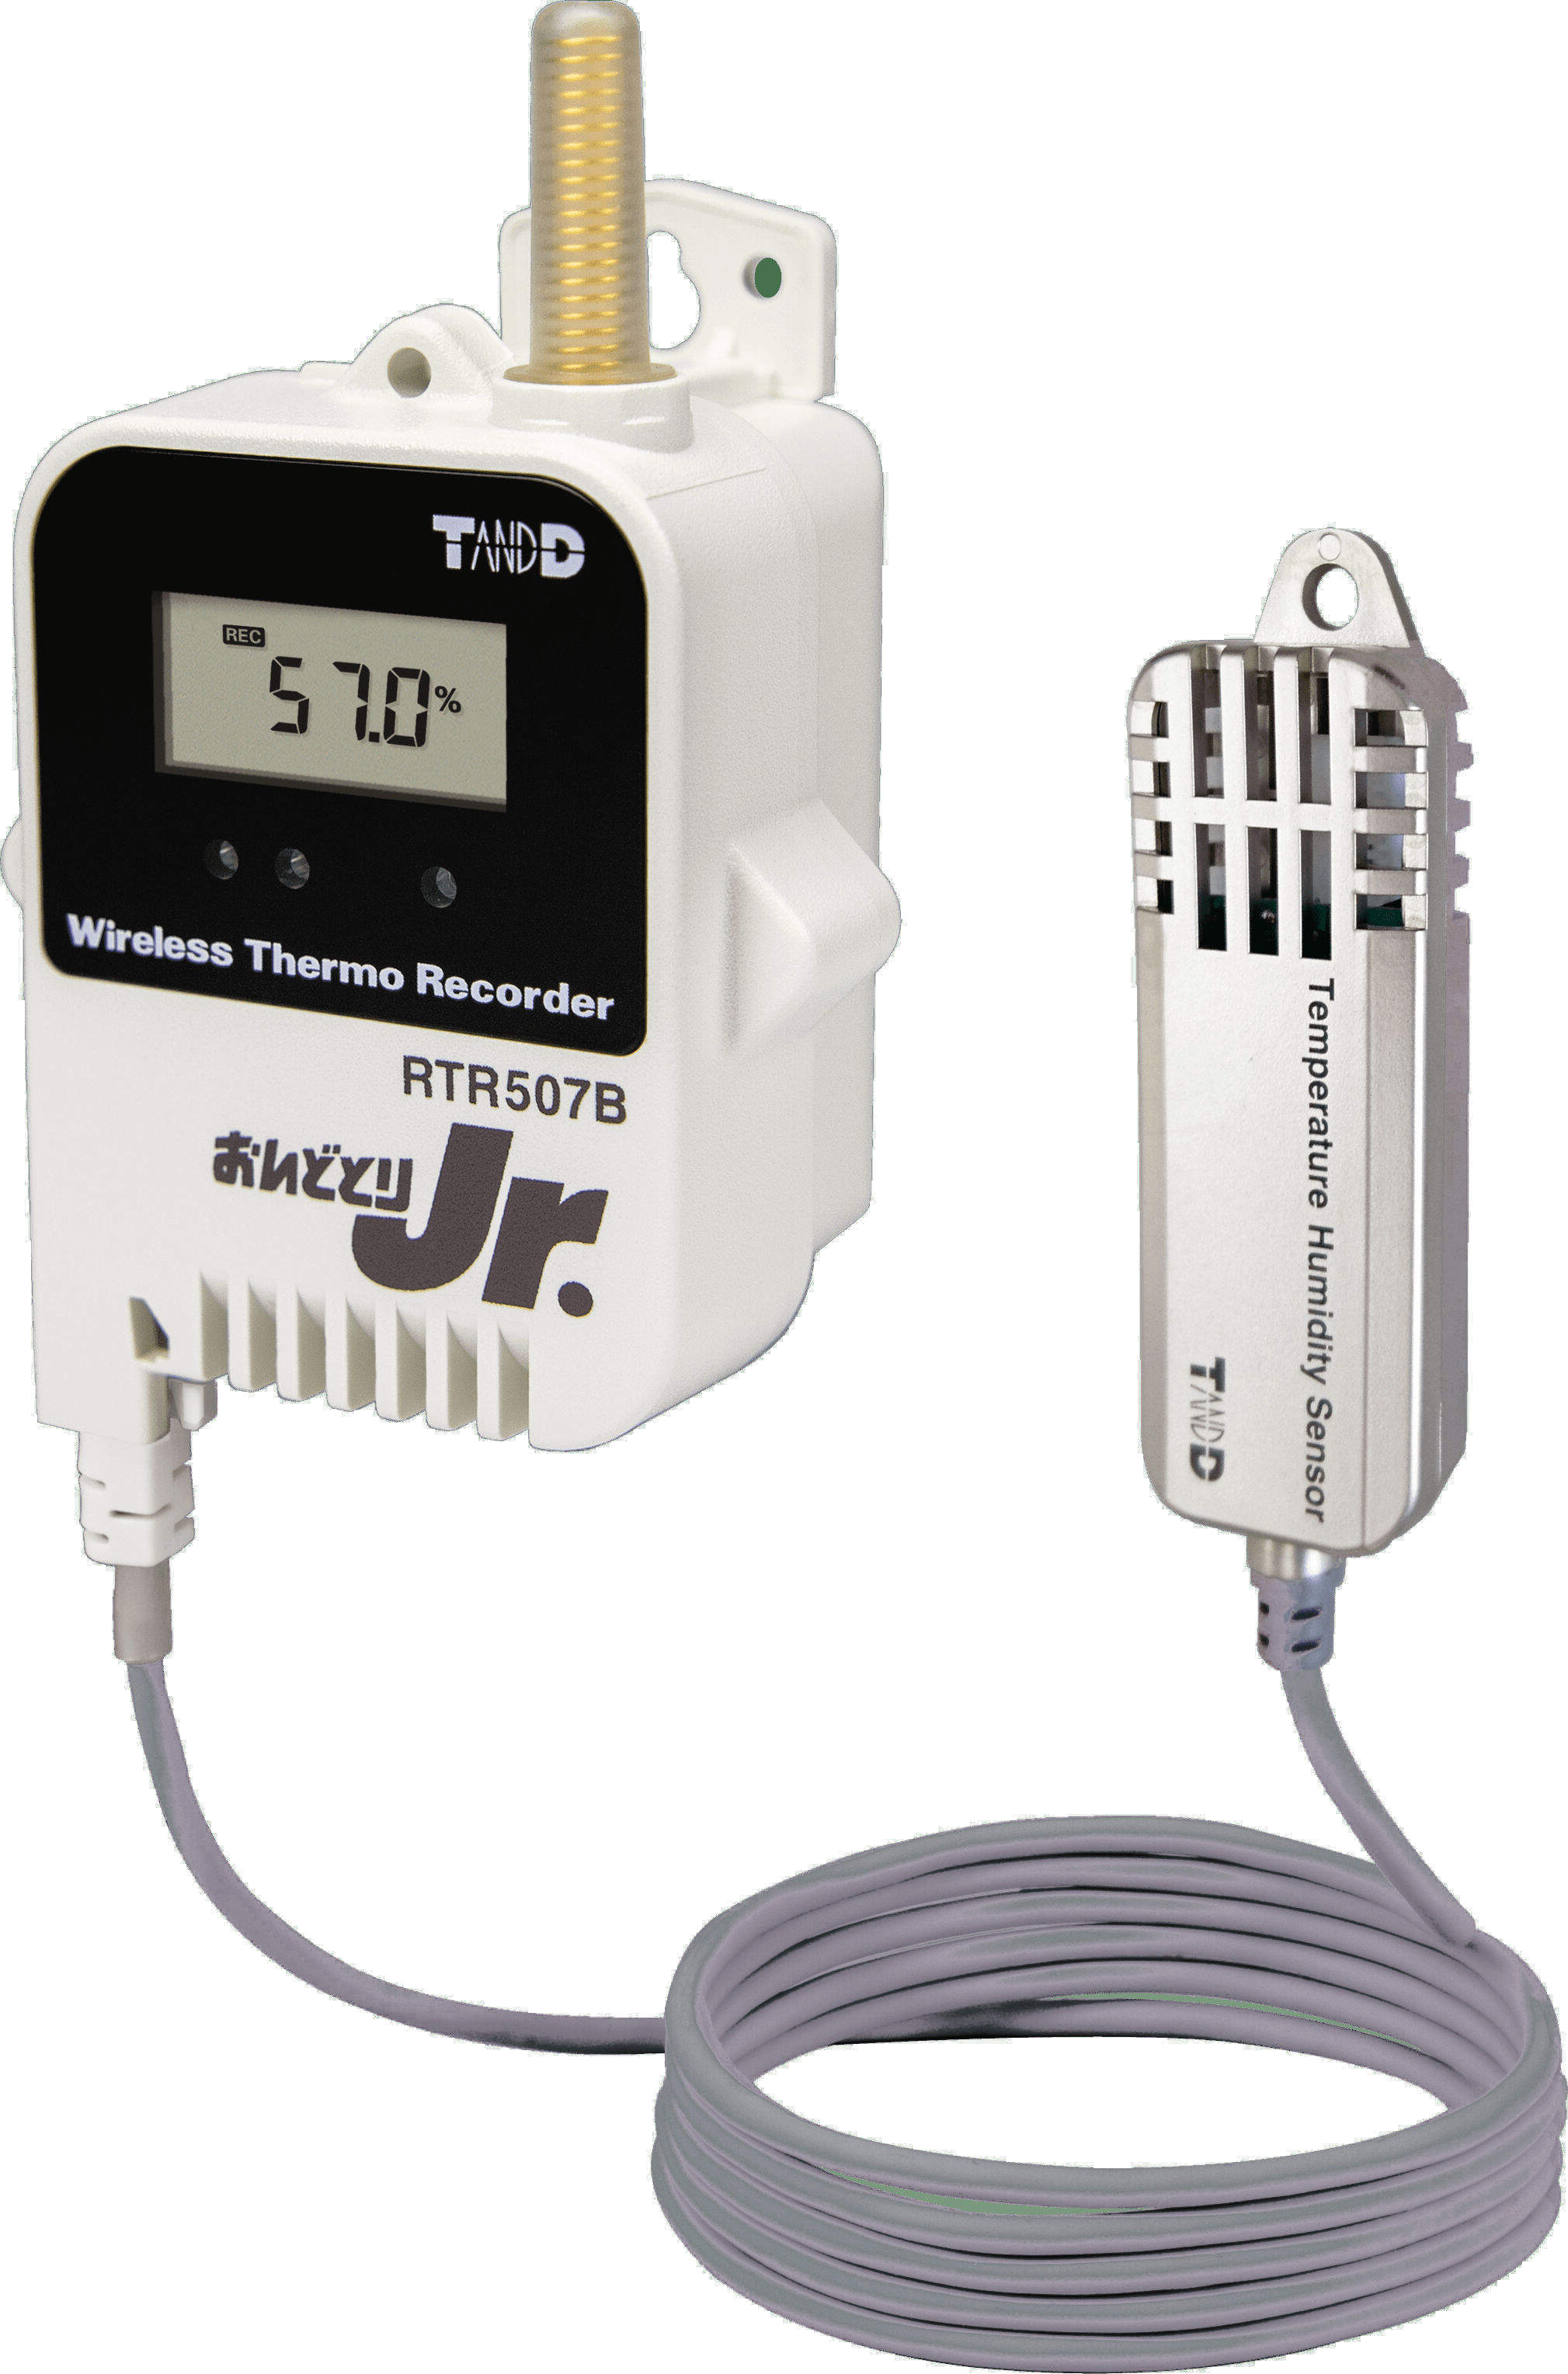 新品おんどとりTR72A温湿度測定機